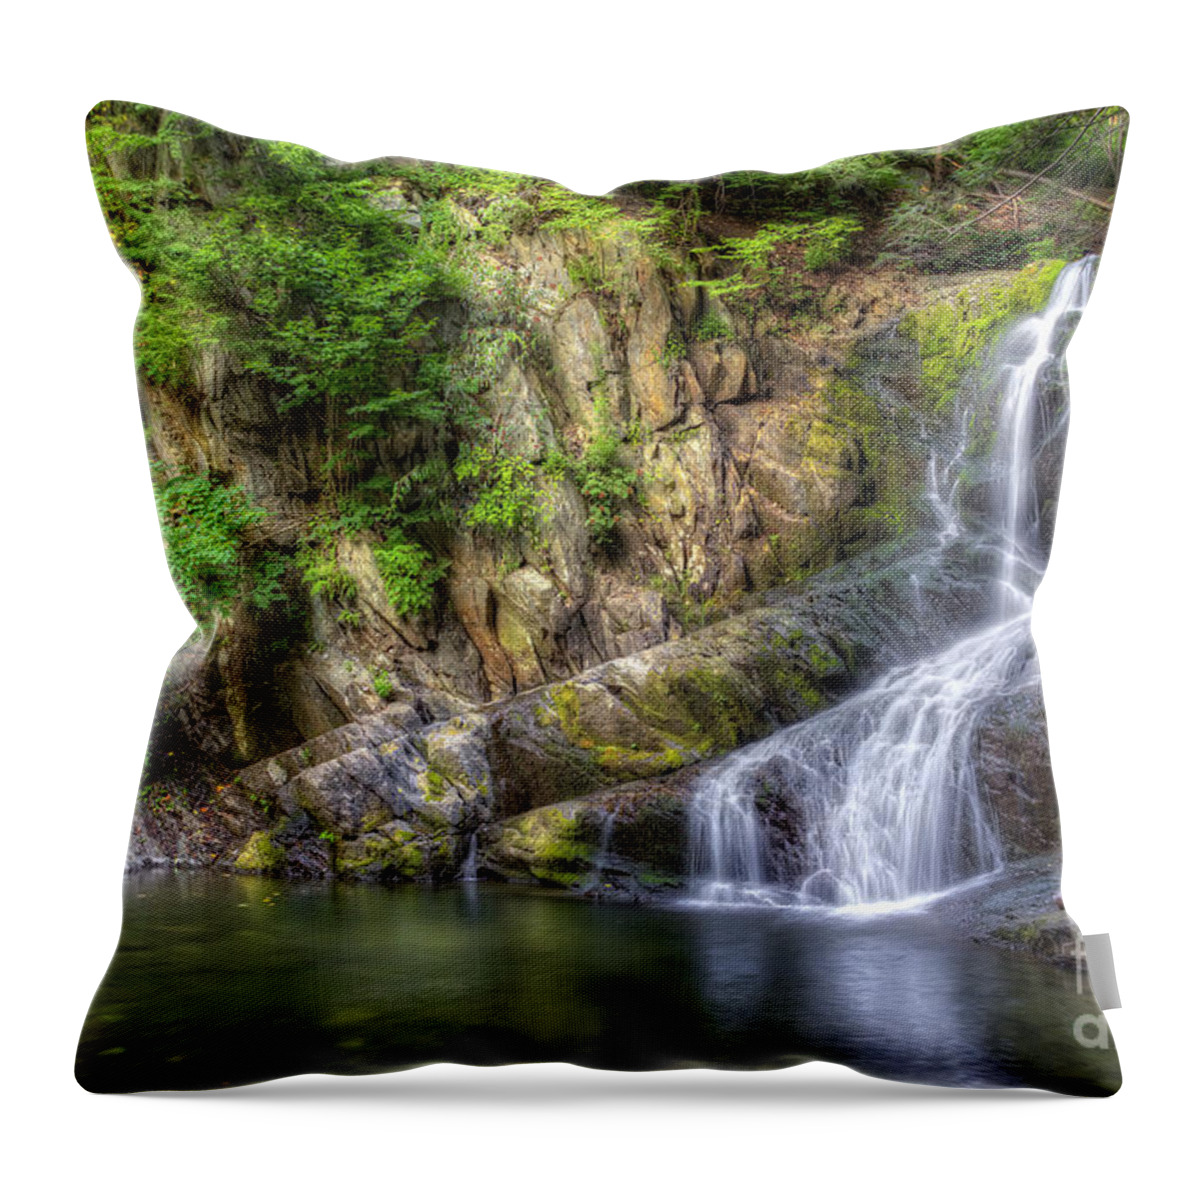 Indian Brook Falls Throw Pillow featuring the photograph Indian Brook Falls by Rick Kuperberg Sr